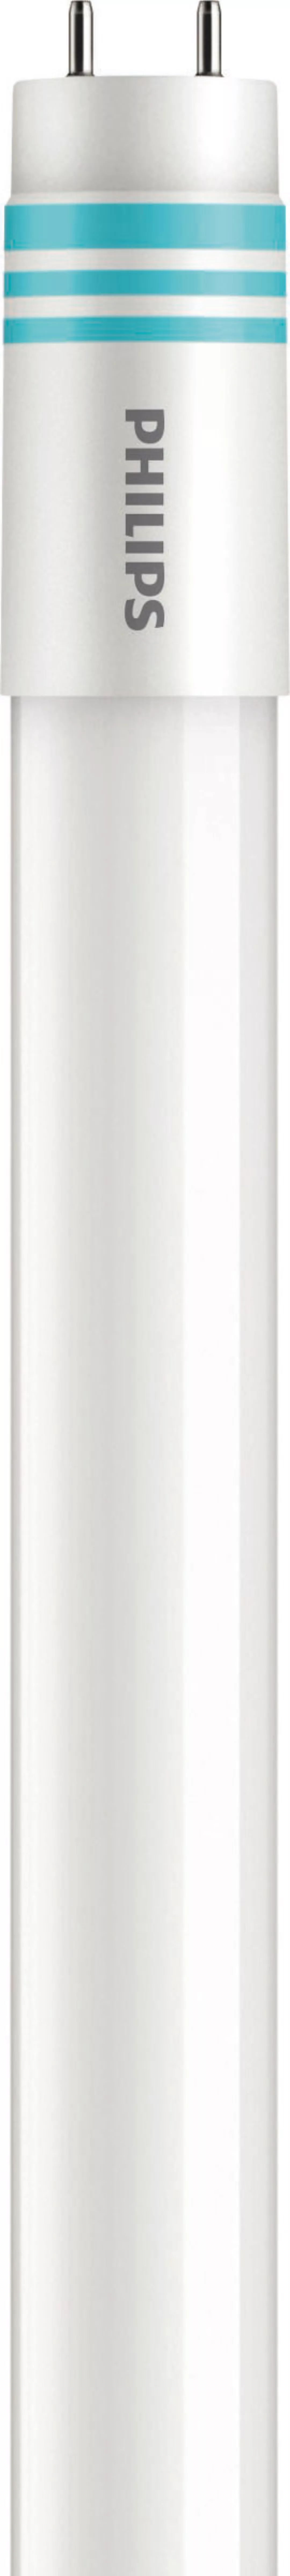 Philips Lighting LED-Tube T8 universal G13, 830, 1200mm MAS LEDtube#3166830 günstig online kaufen